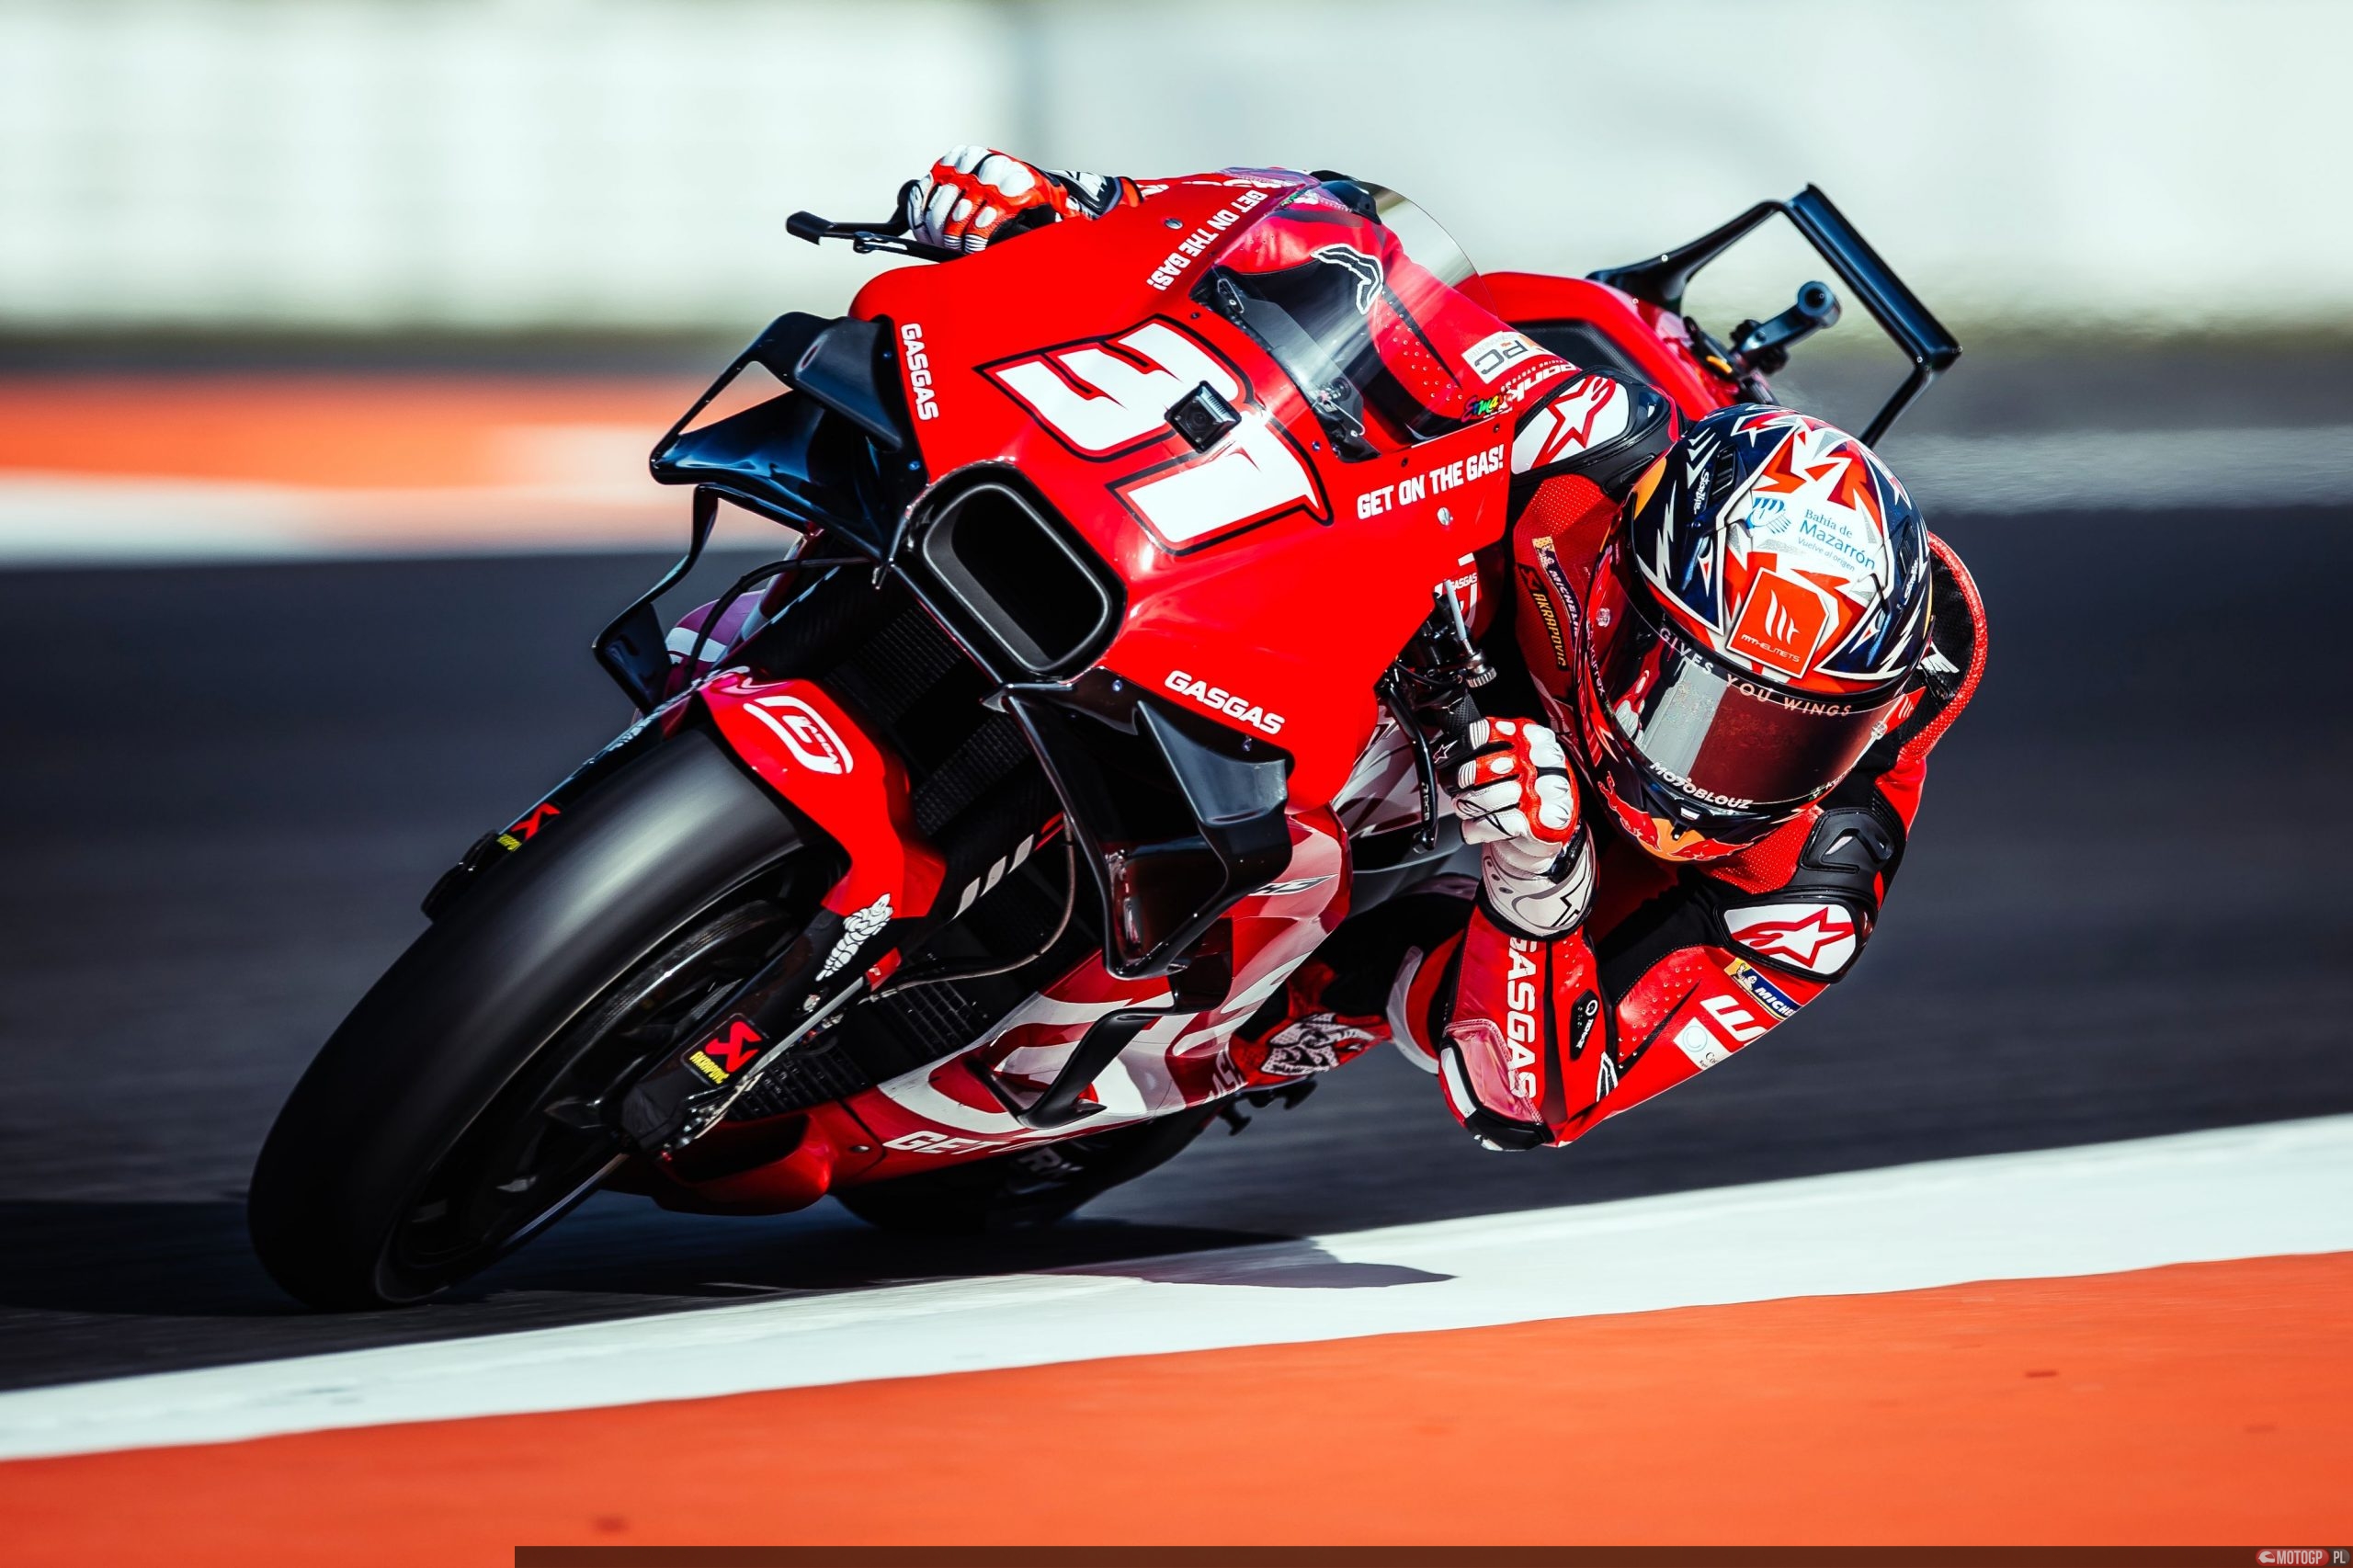 Pedro Acosta Setelah Debut di MotoGP : "Motor Ini Sangat Cepat"